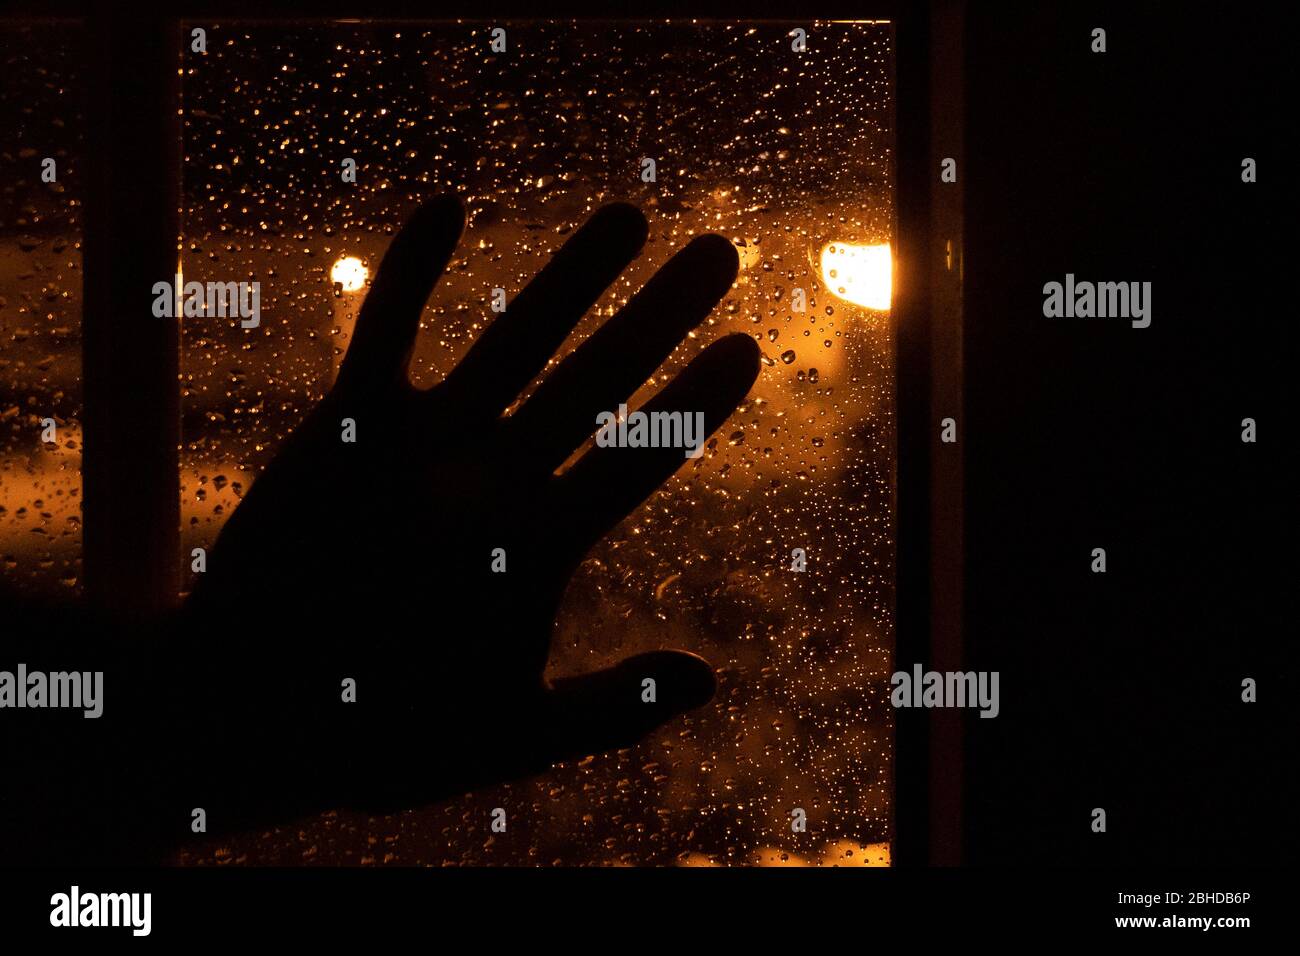 Silhouette einer Hand, die nachts am Fenster mit dem warmen Licht der Straßenlampen und mit Wassertropfen von einem regnerischen Tag ruht. Trauriges Bild von mel Stockfoto